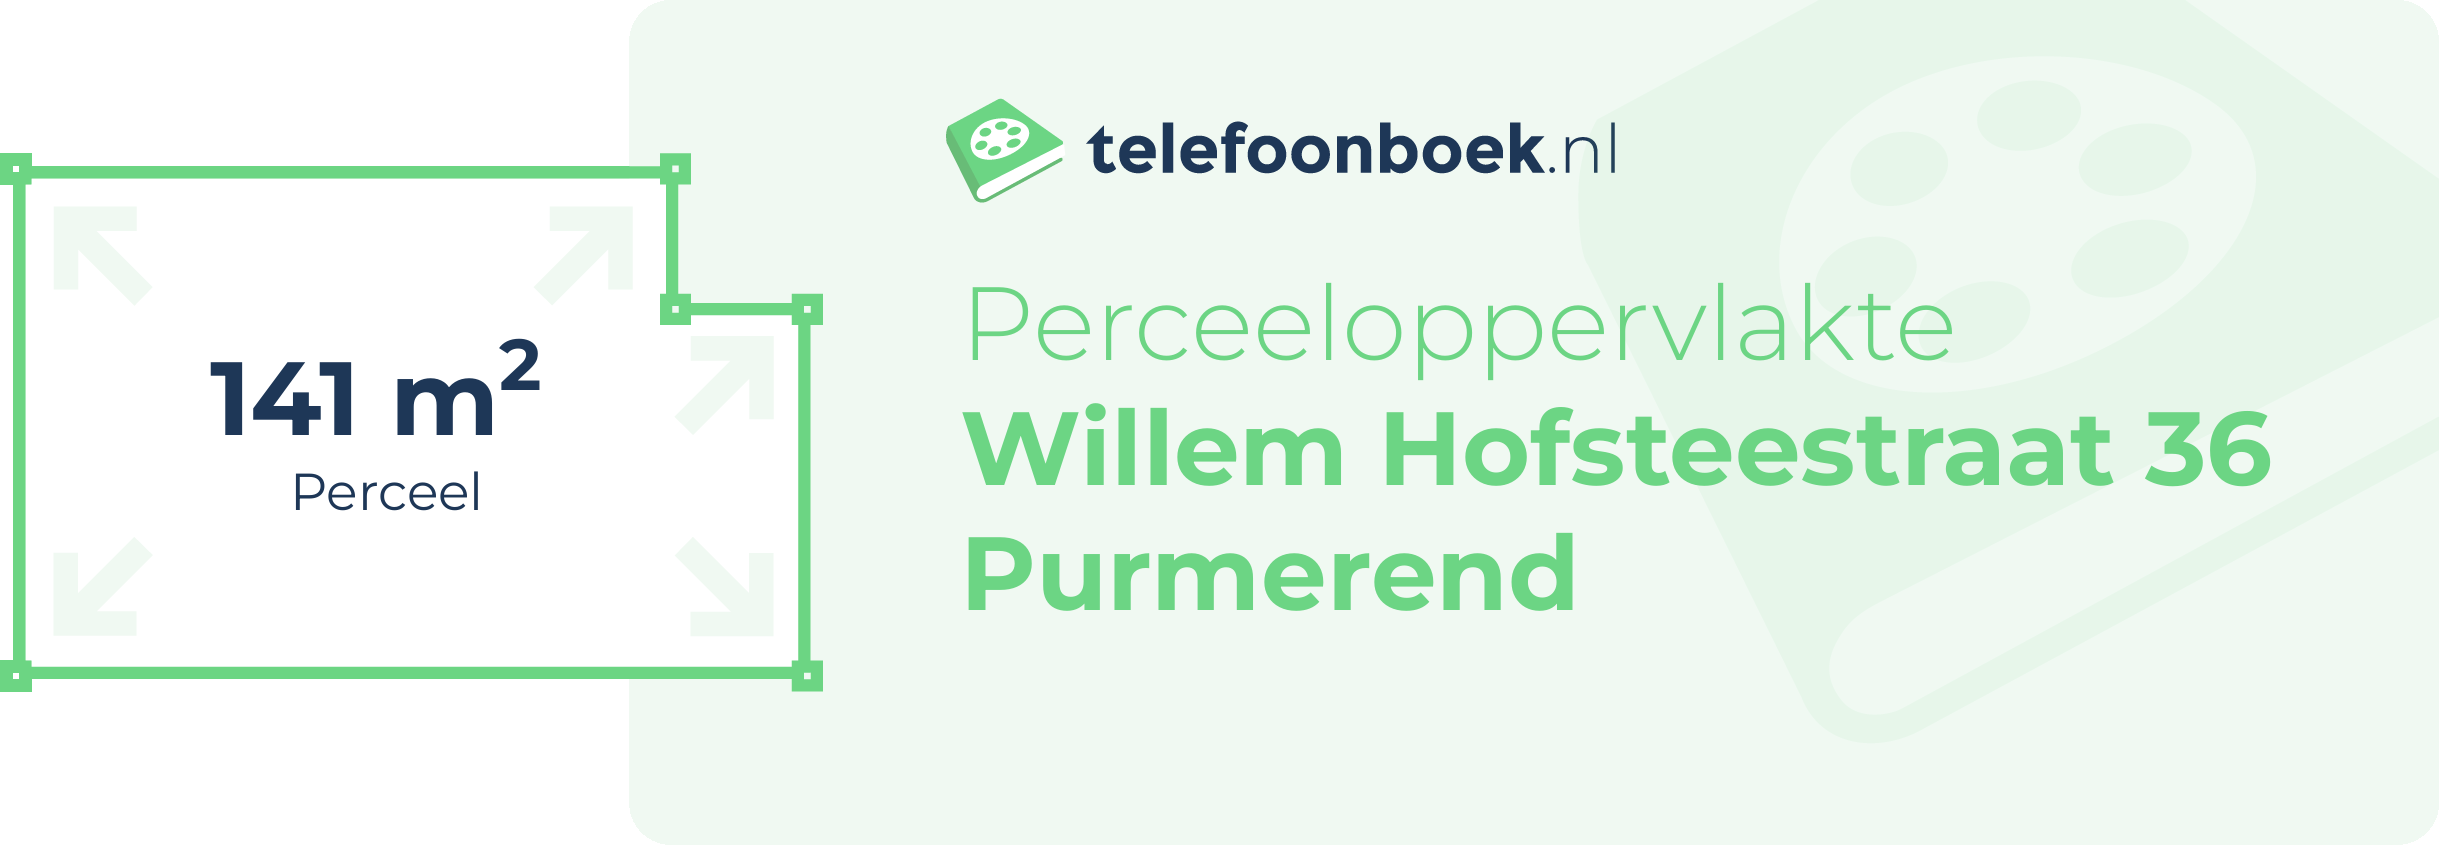 Perceeloppervlakte Willem Hofsteestraat 36 Purmerend